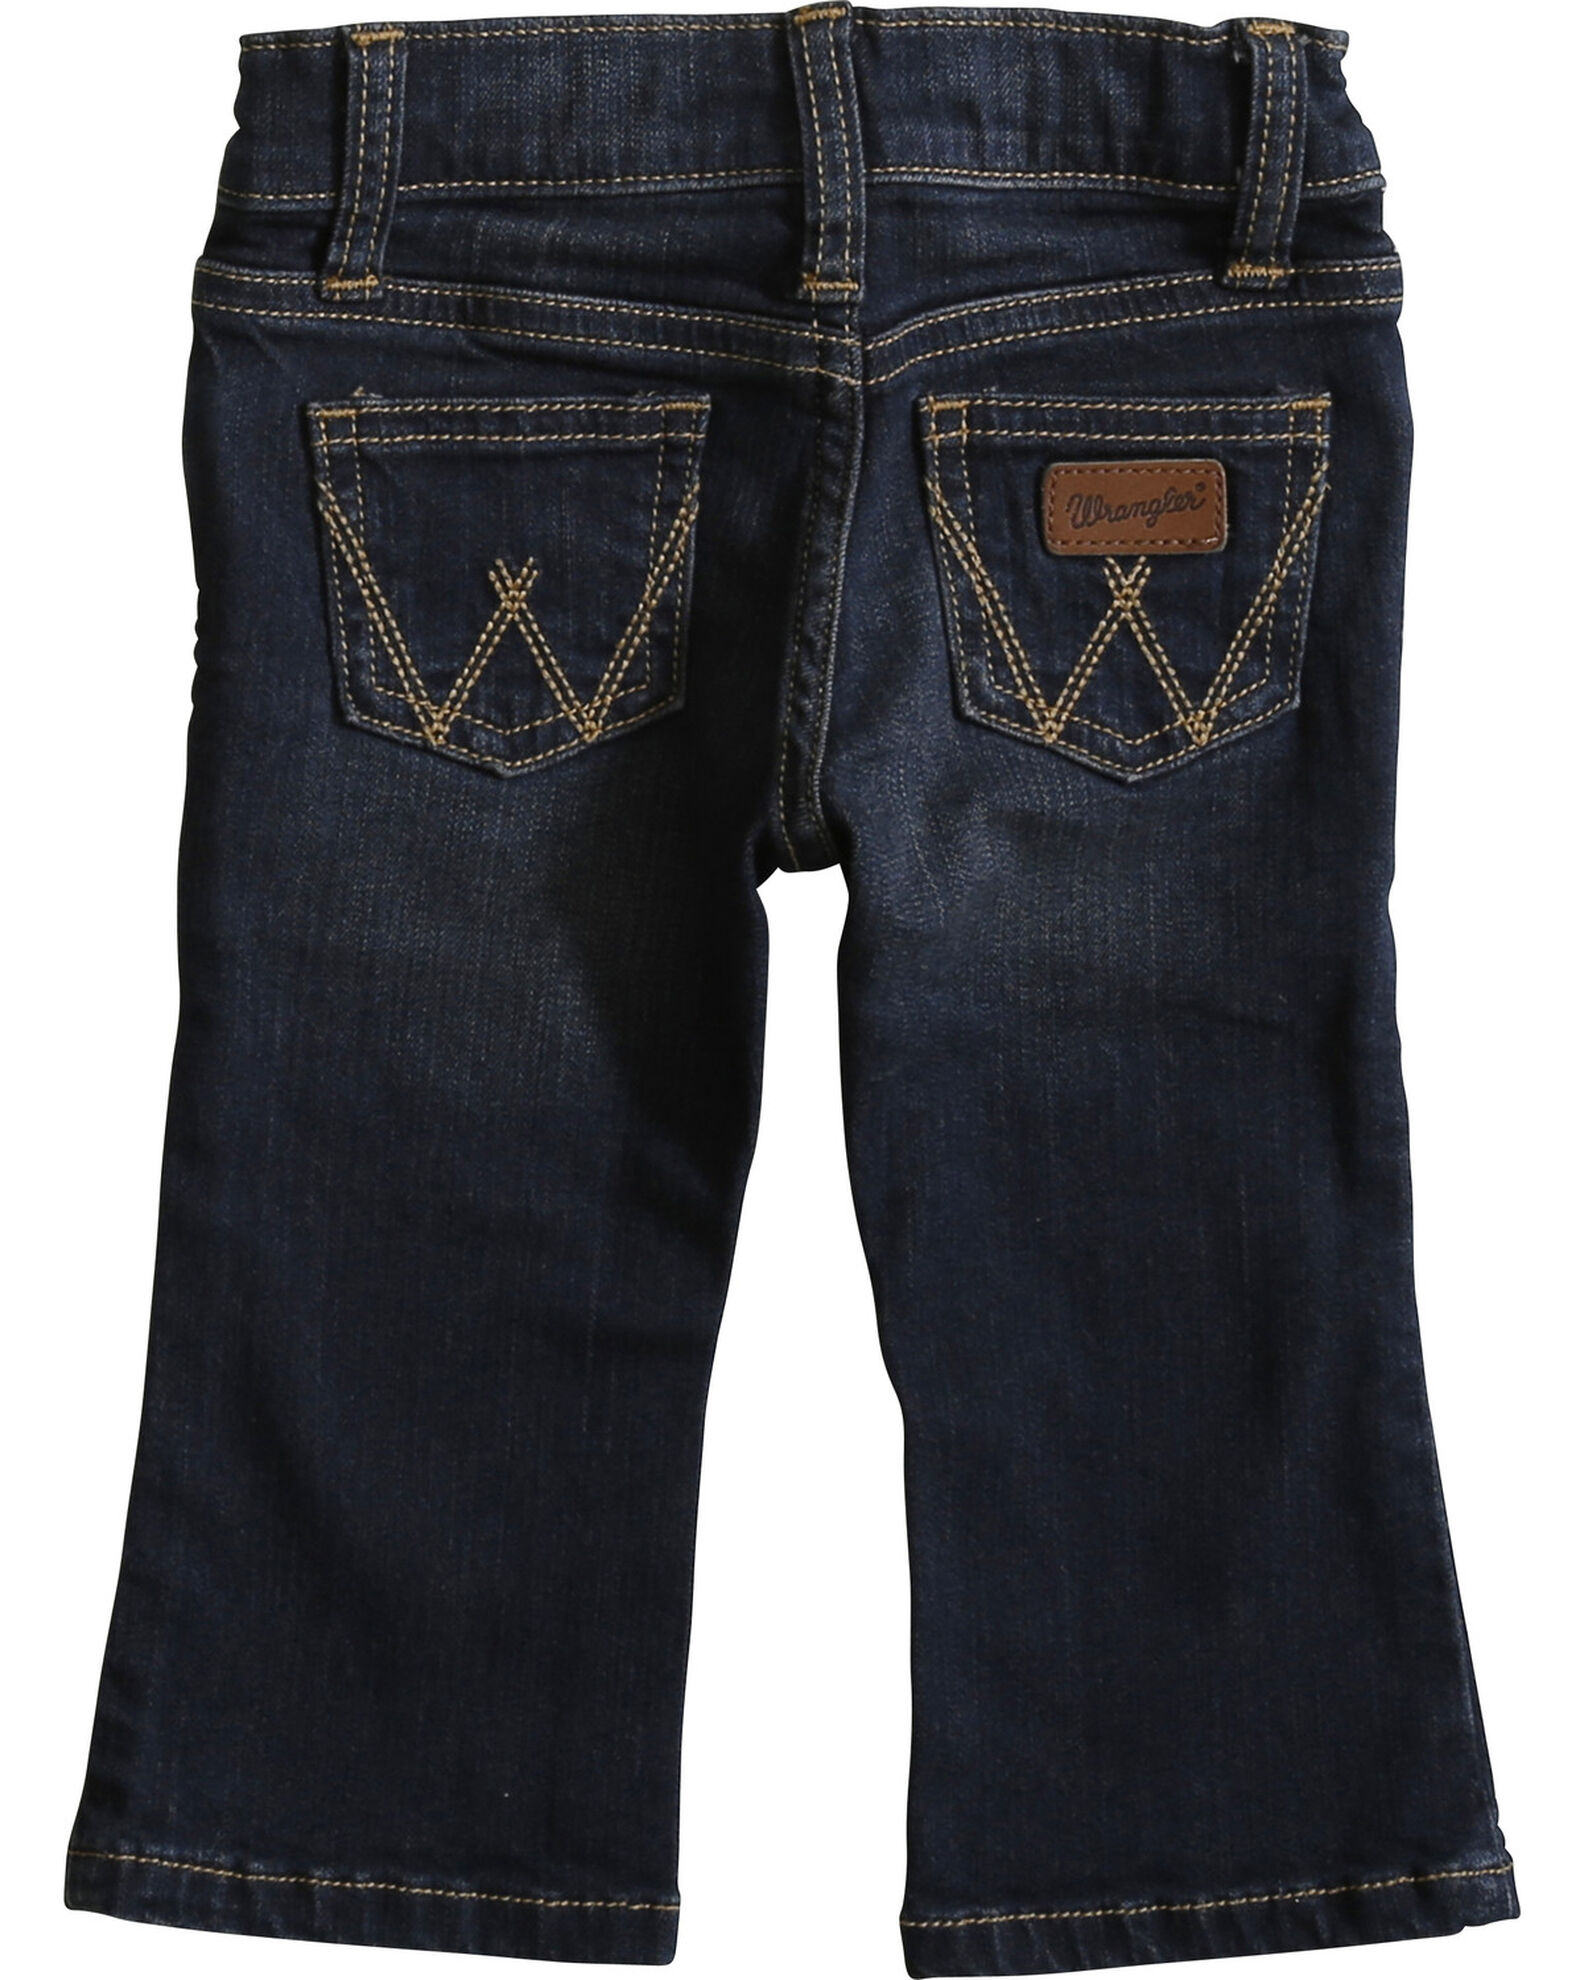 Wrangler Infant Boys' Dark Wash Jeans | Boot Barn